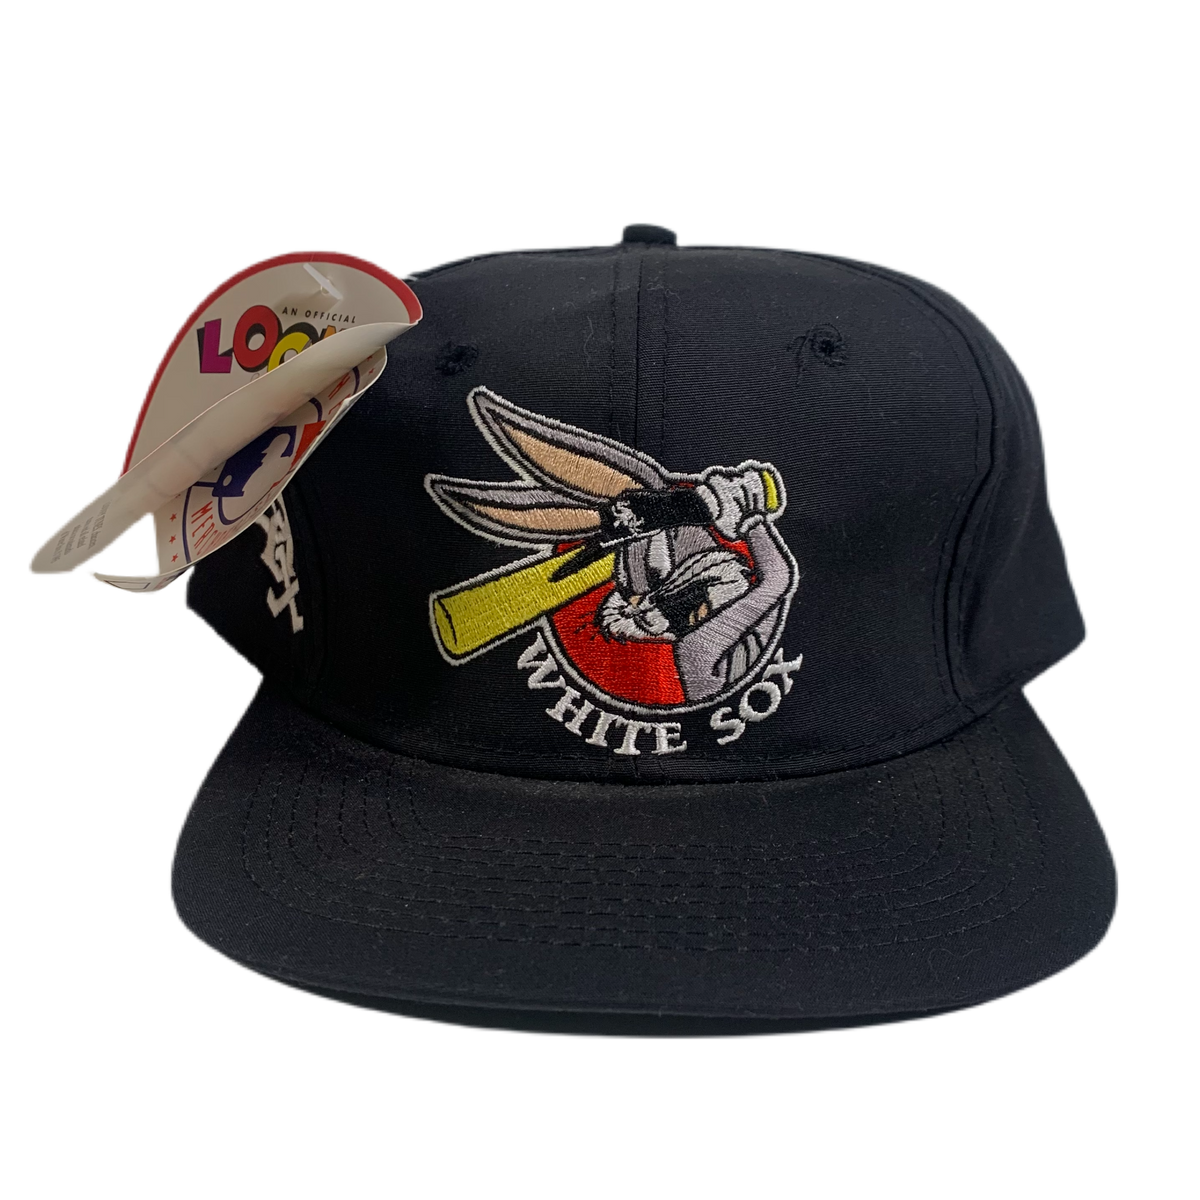 Vintage Looney Tunes &quot;White Sox&quot; Hat